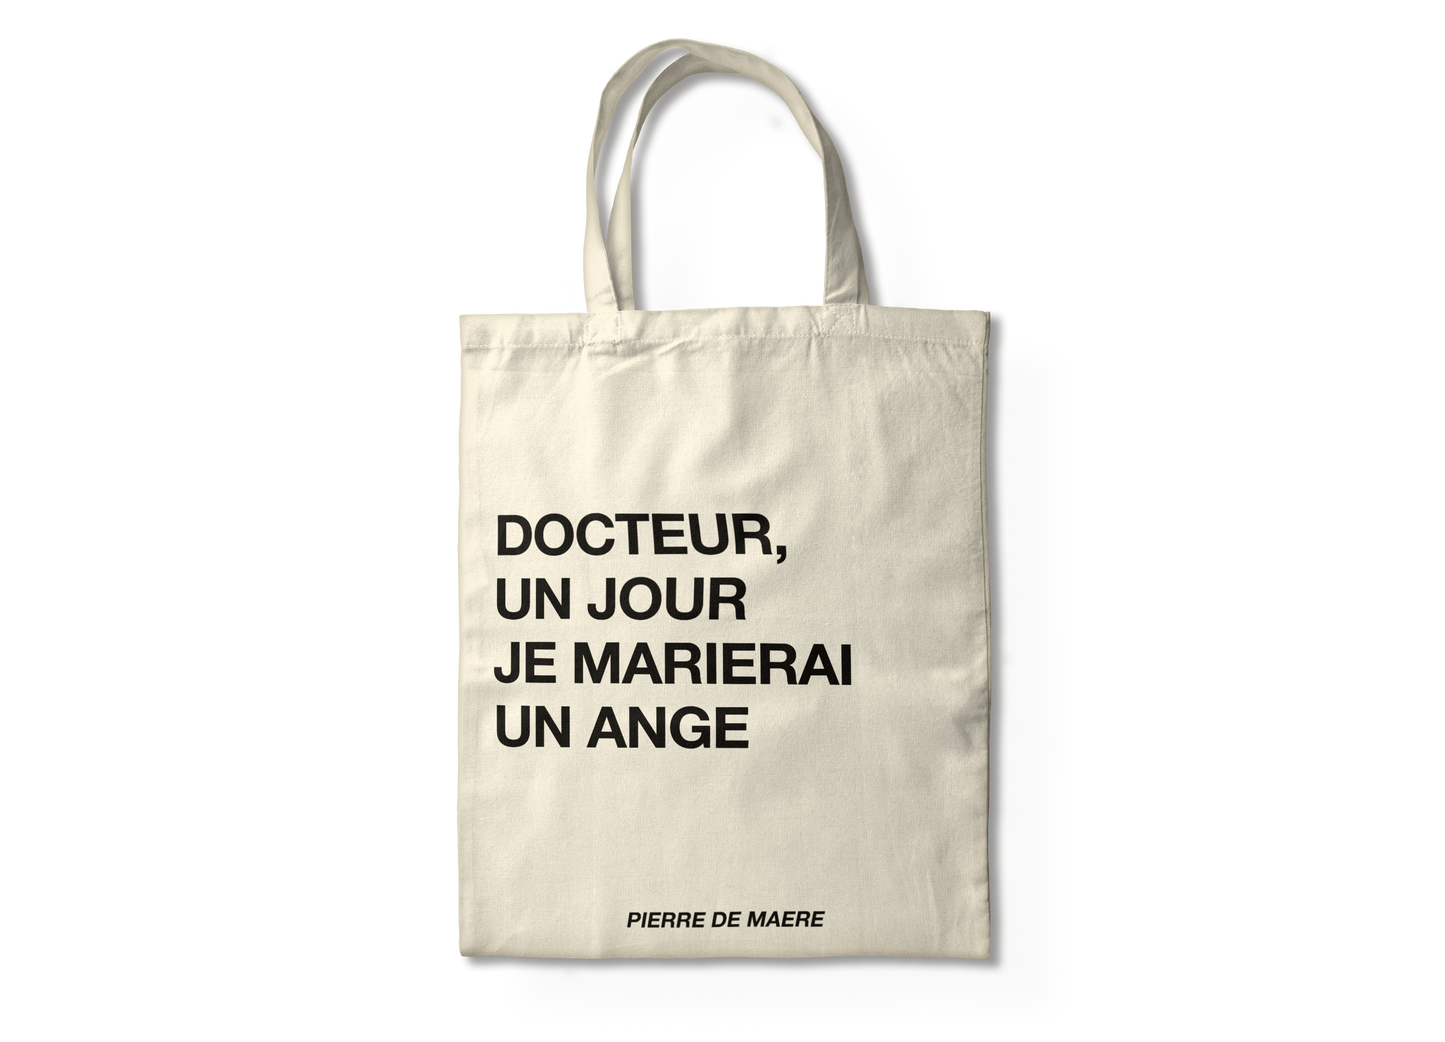 Tote bag “Docteur un jour je marierai un ange” | Pierre de Maere